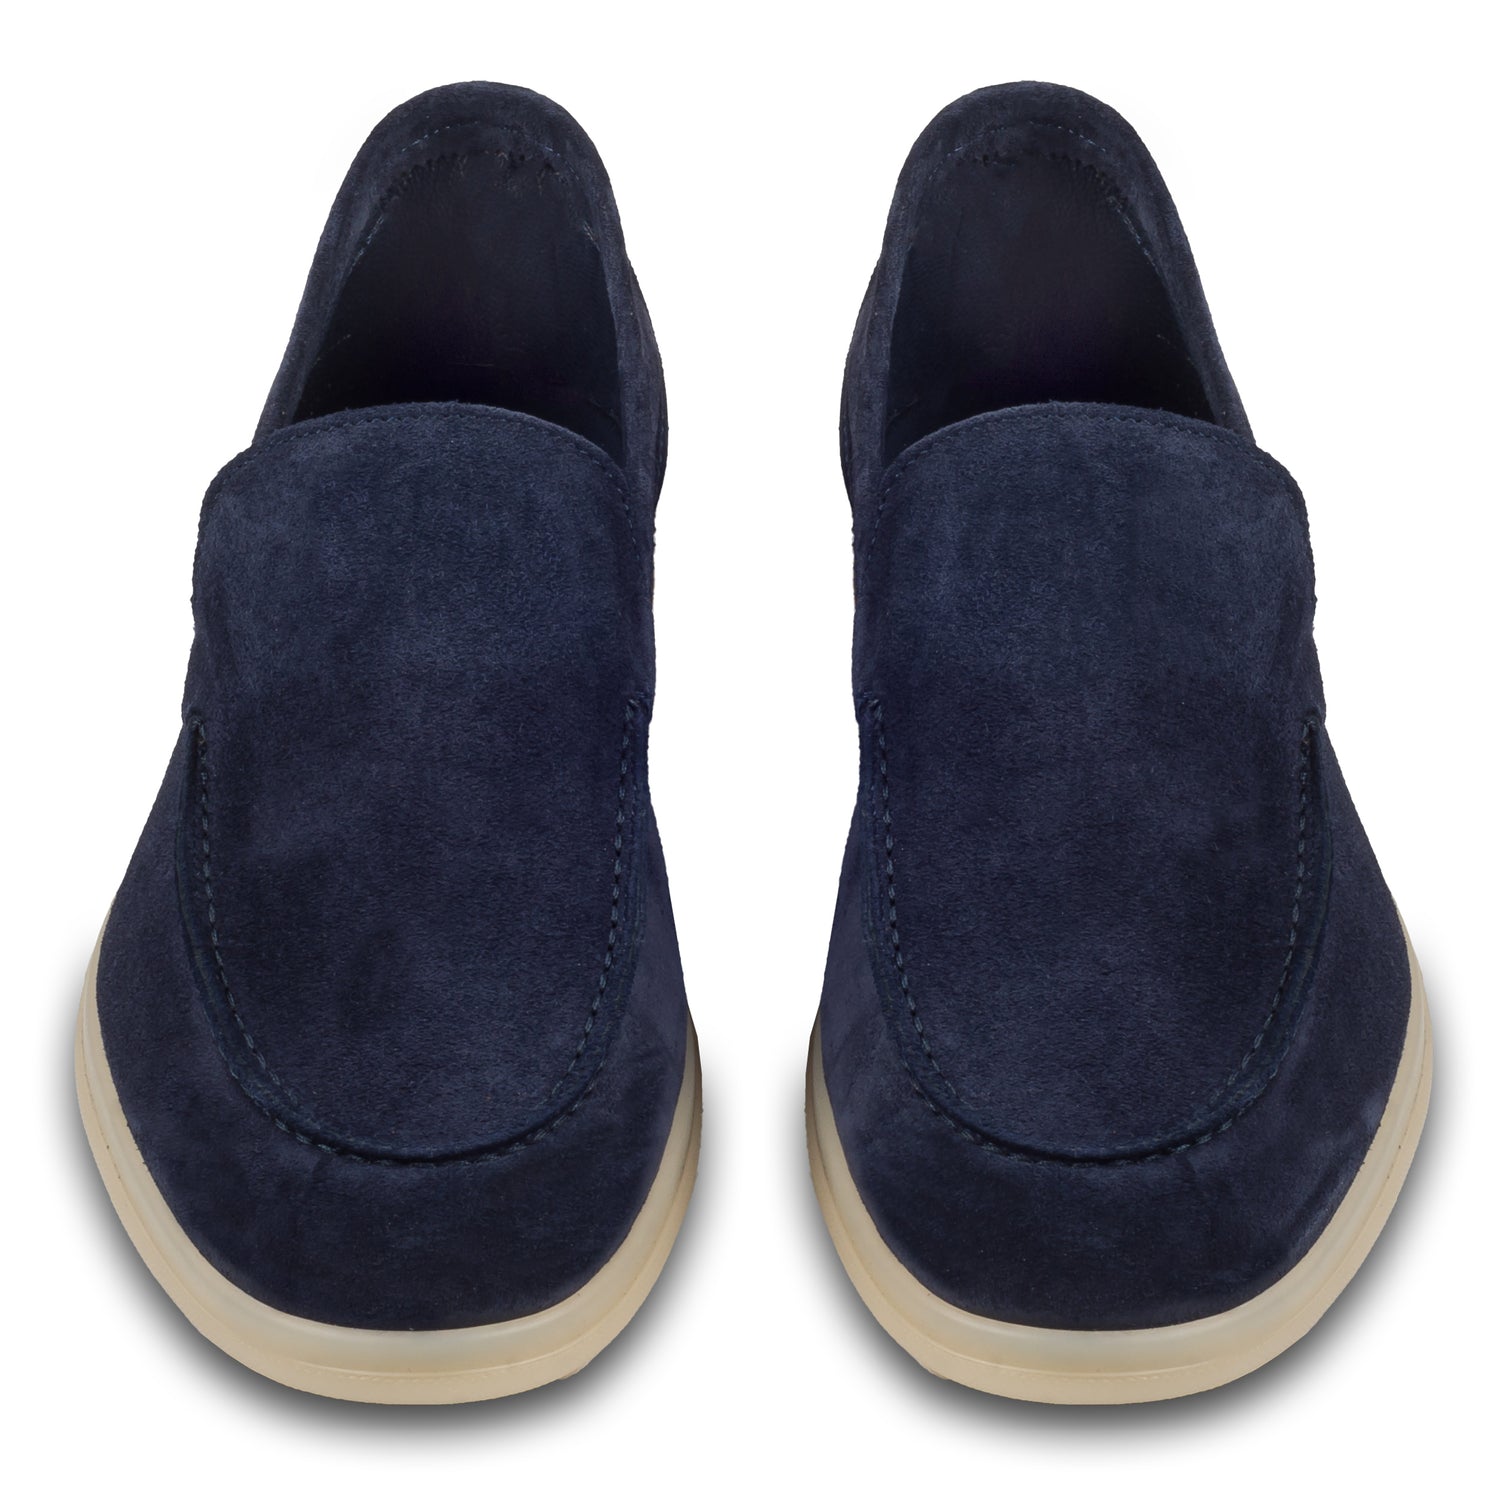 Brecos Italienische Herren-Loafer aus weichem Veloursleder in blau. Mit leichter Gummisohle.  Handgefertigt in Italien. Paarweise Ansicht von vorne.  